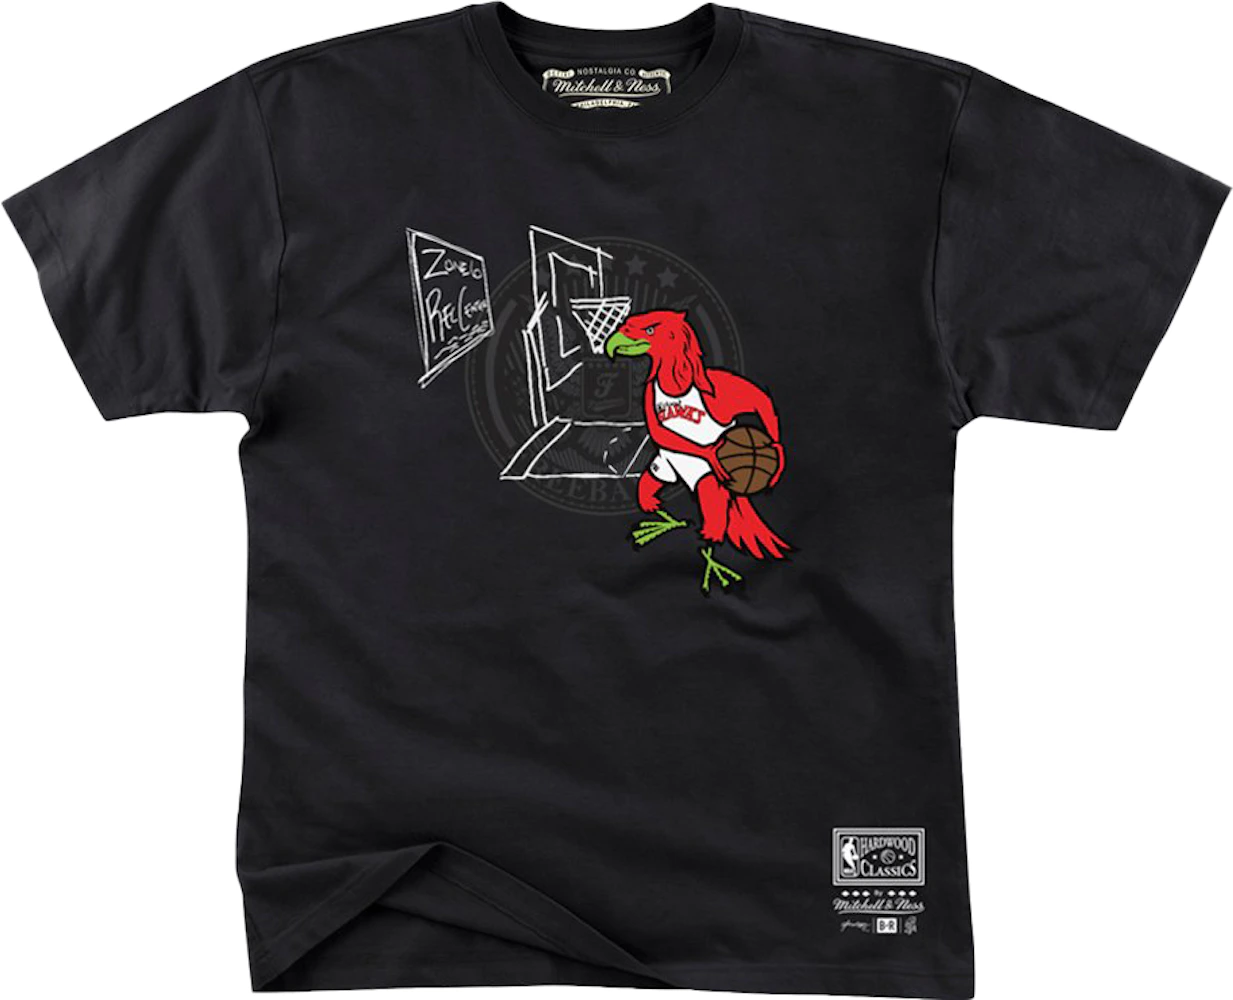 Mitchell & Ness x Future x Atlanta Hawks T-Shirt Black Men's - SS20 - US